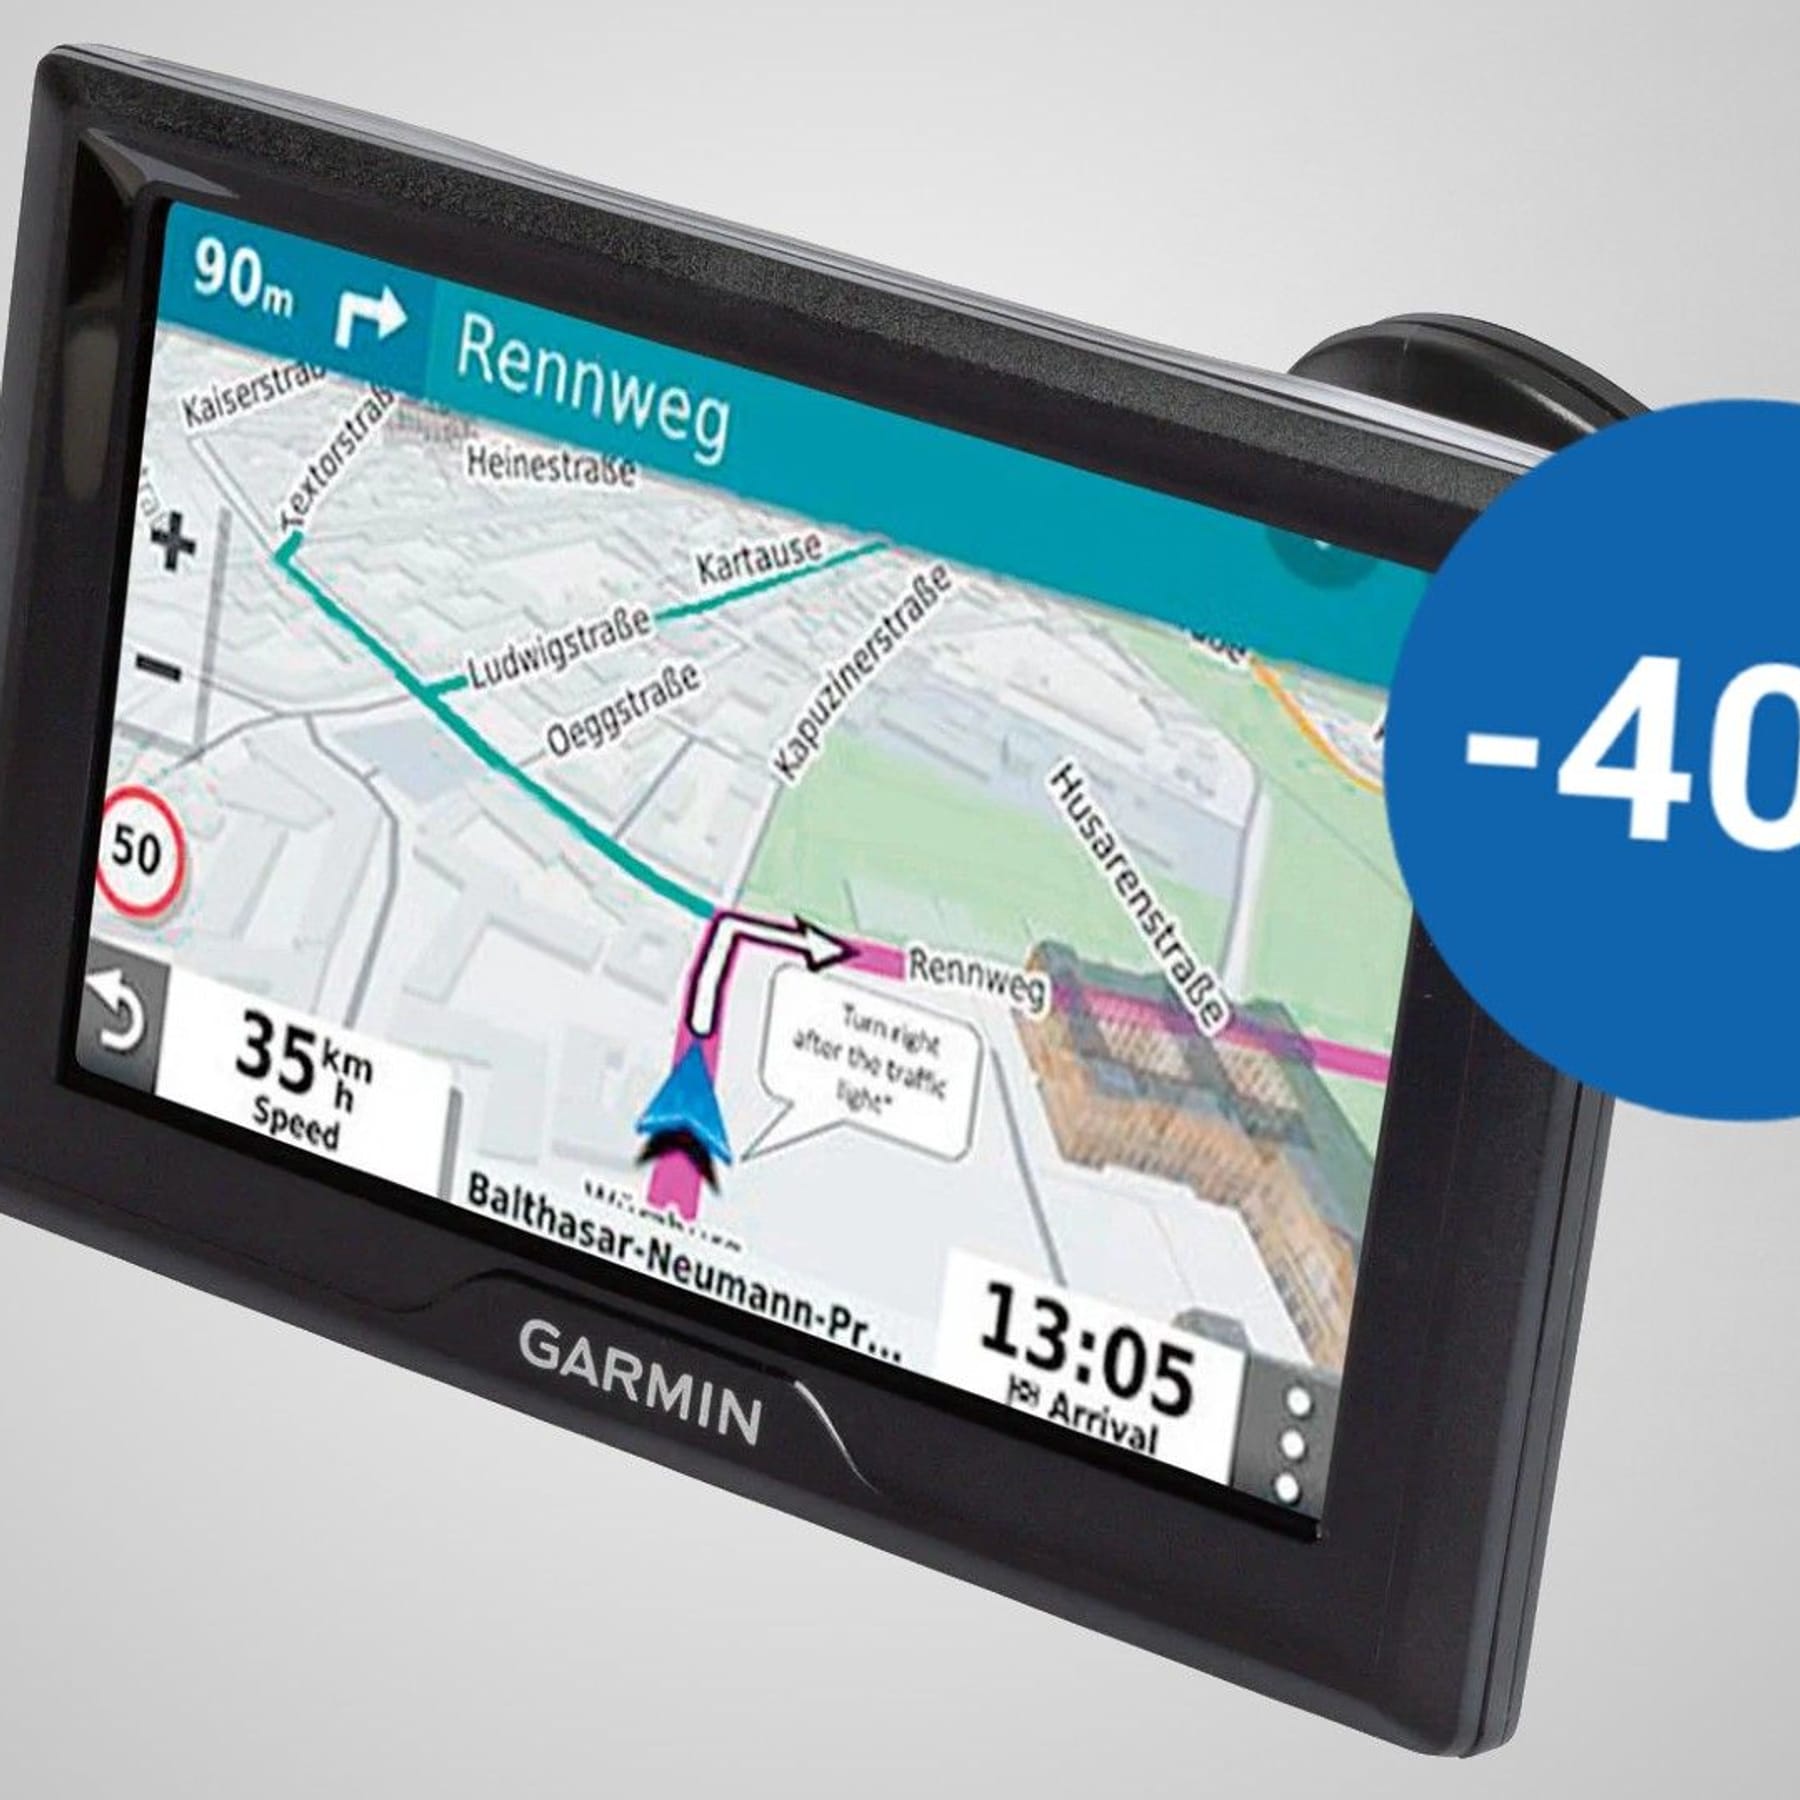 Garmin-Navigationsgerät jetzt bei Tiefpreis erhältlich Lidl zum